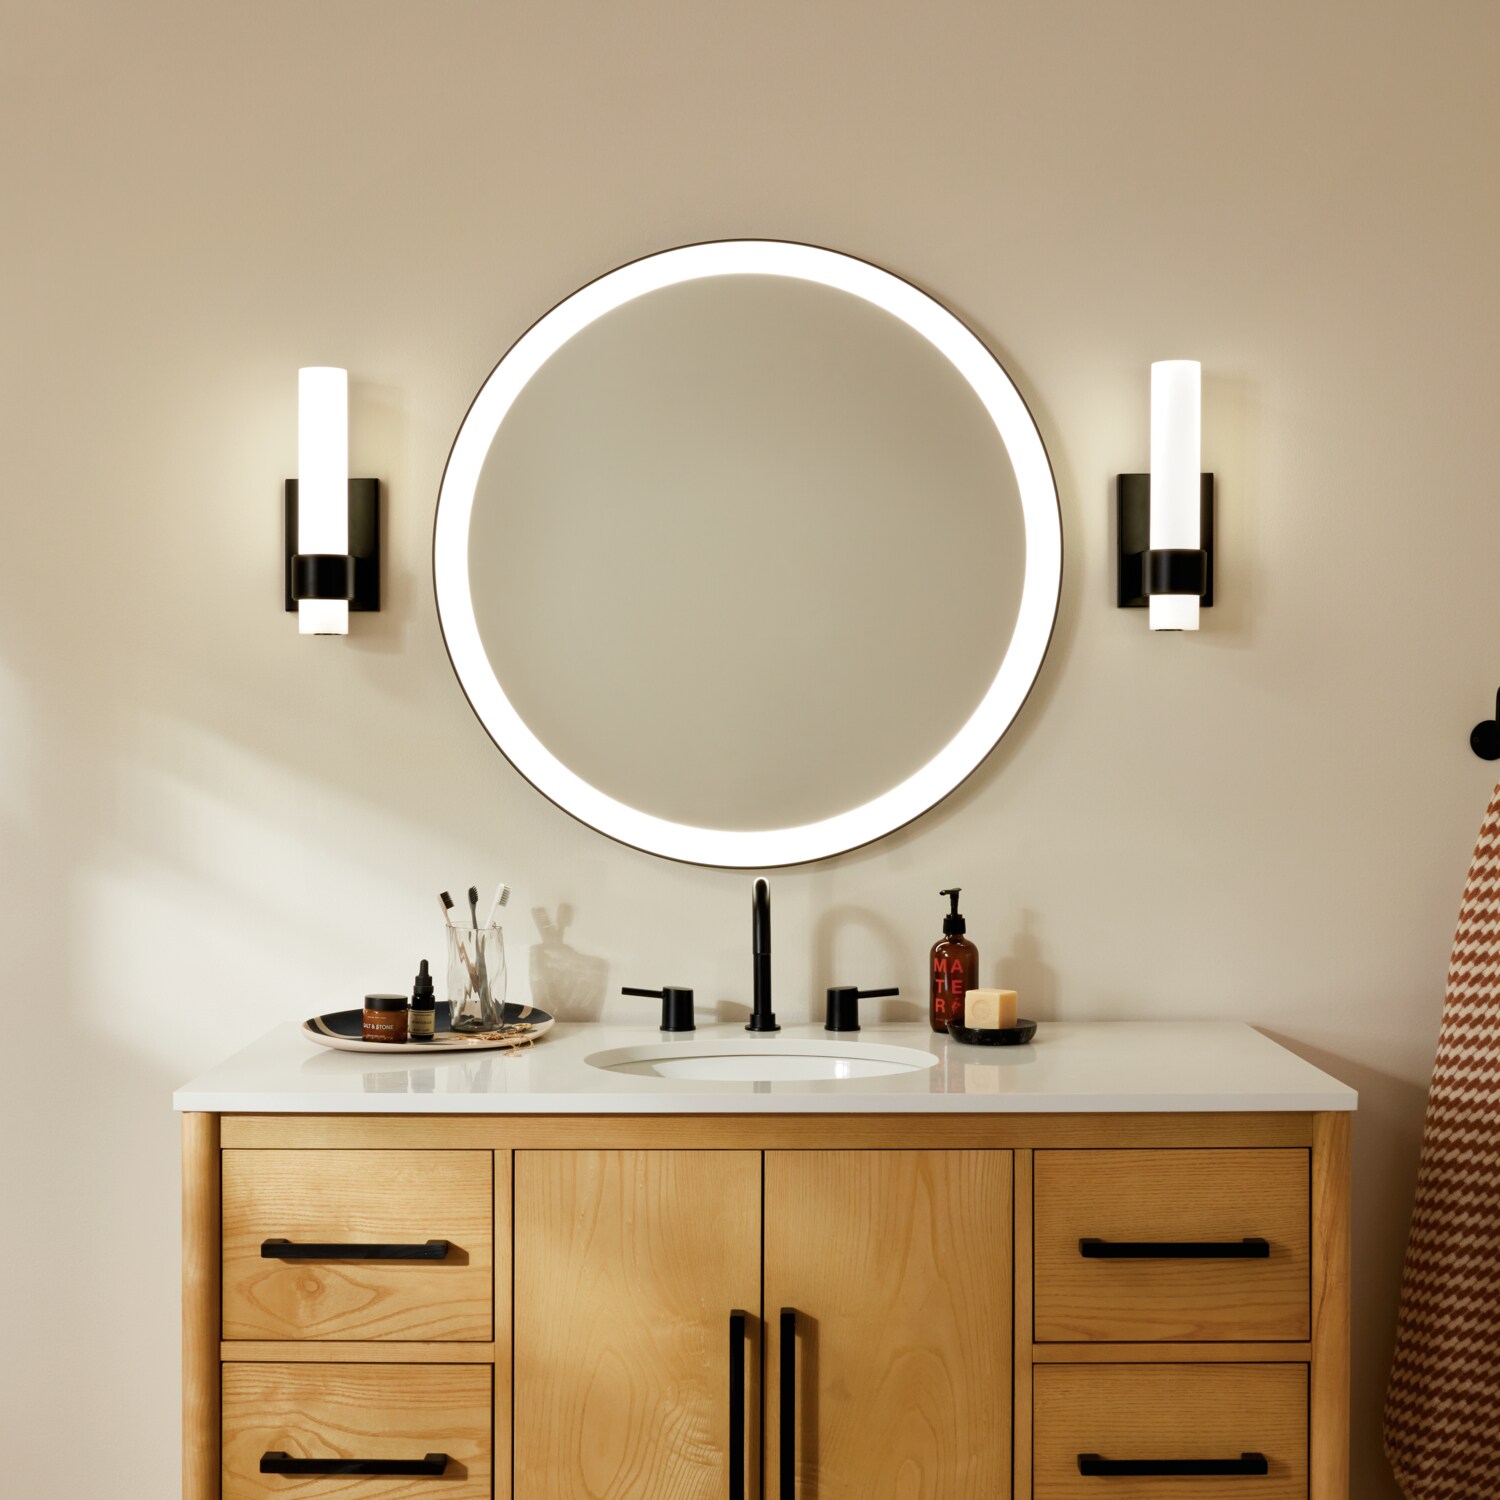 3 Ring LED Flush Ceiling Light | Bathroom Rated | Chrome